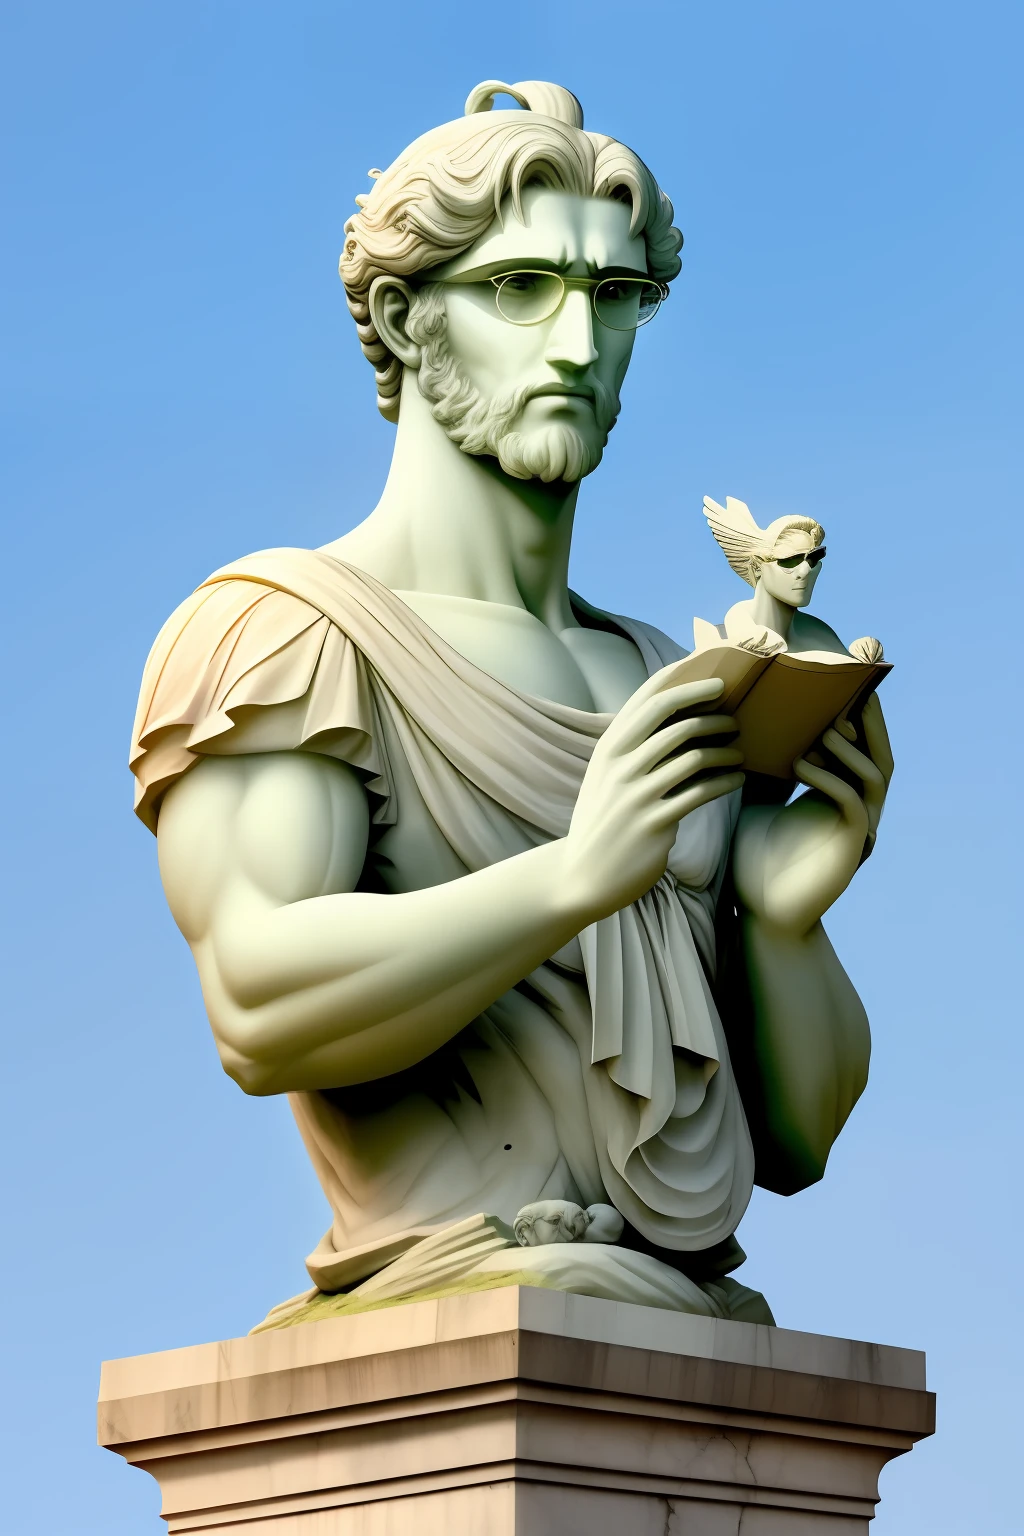 Estilo estatua de mármol griego, sin ropa,gris toguro, canas y gafas